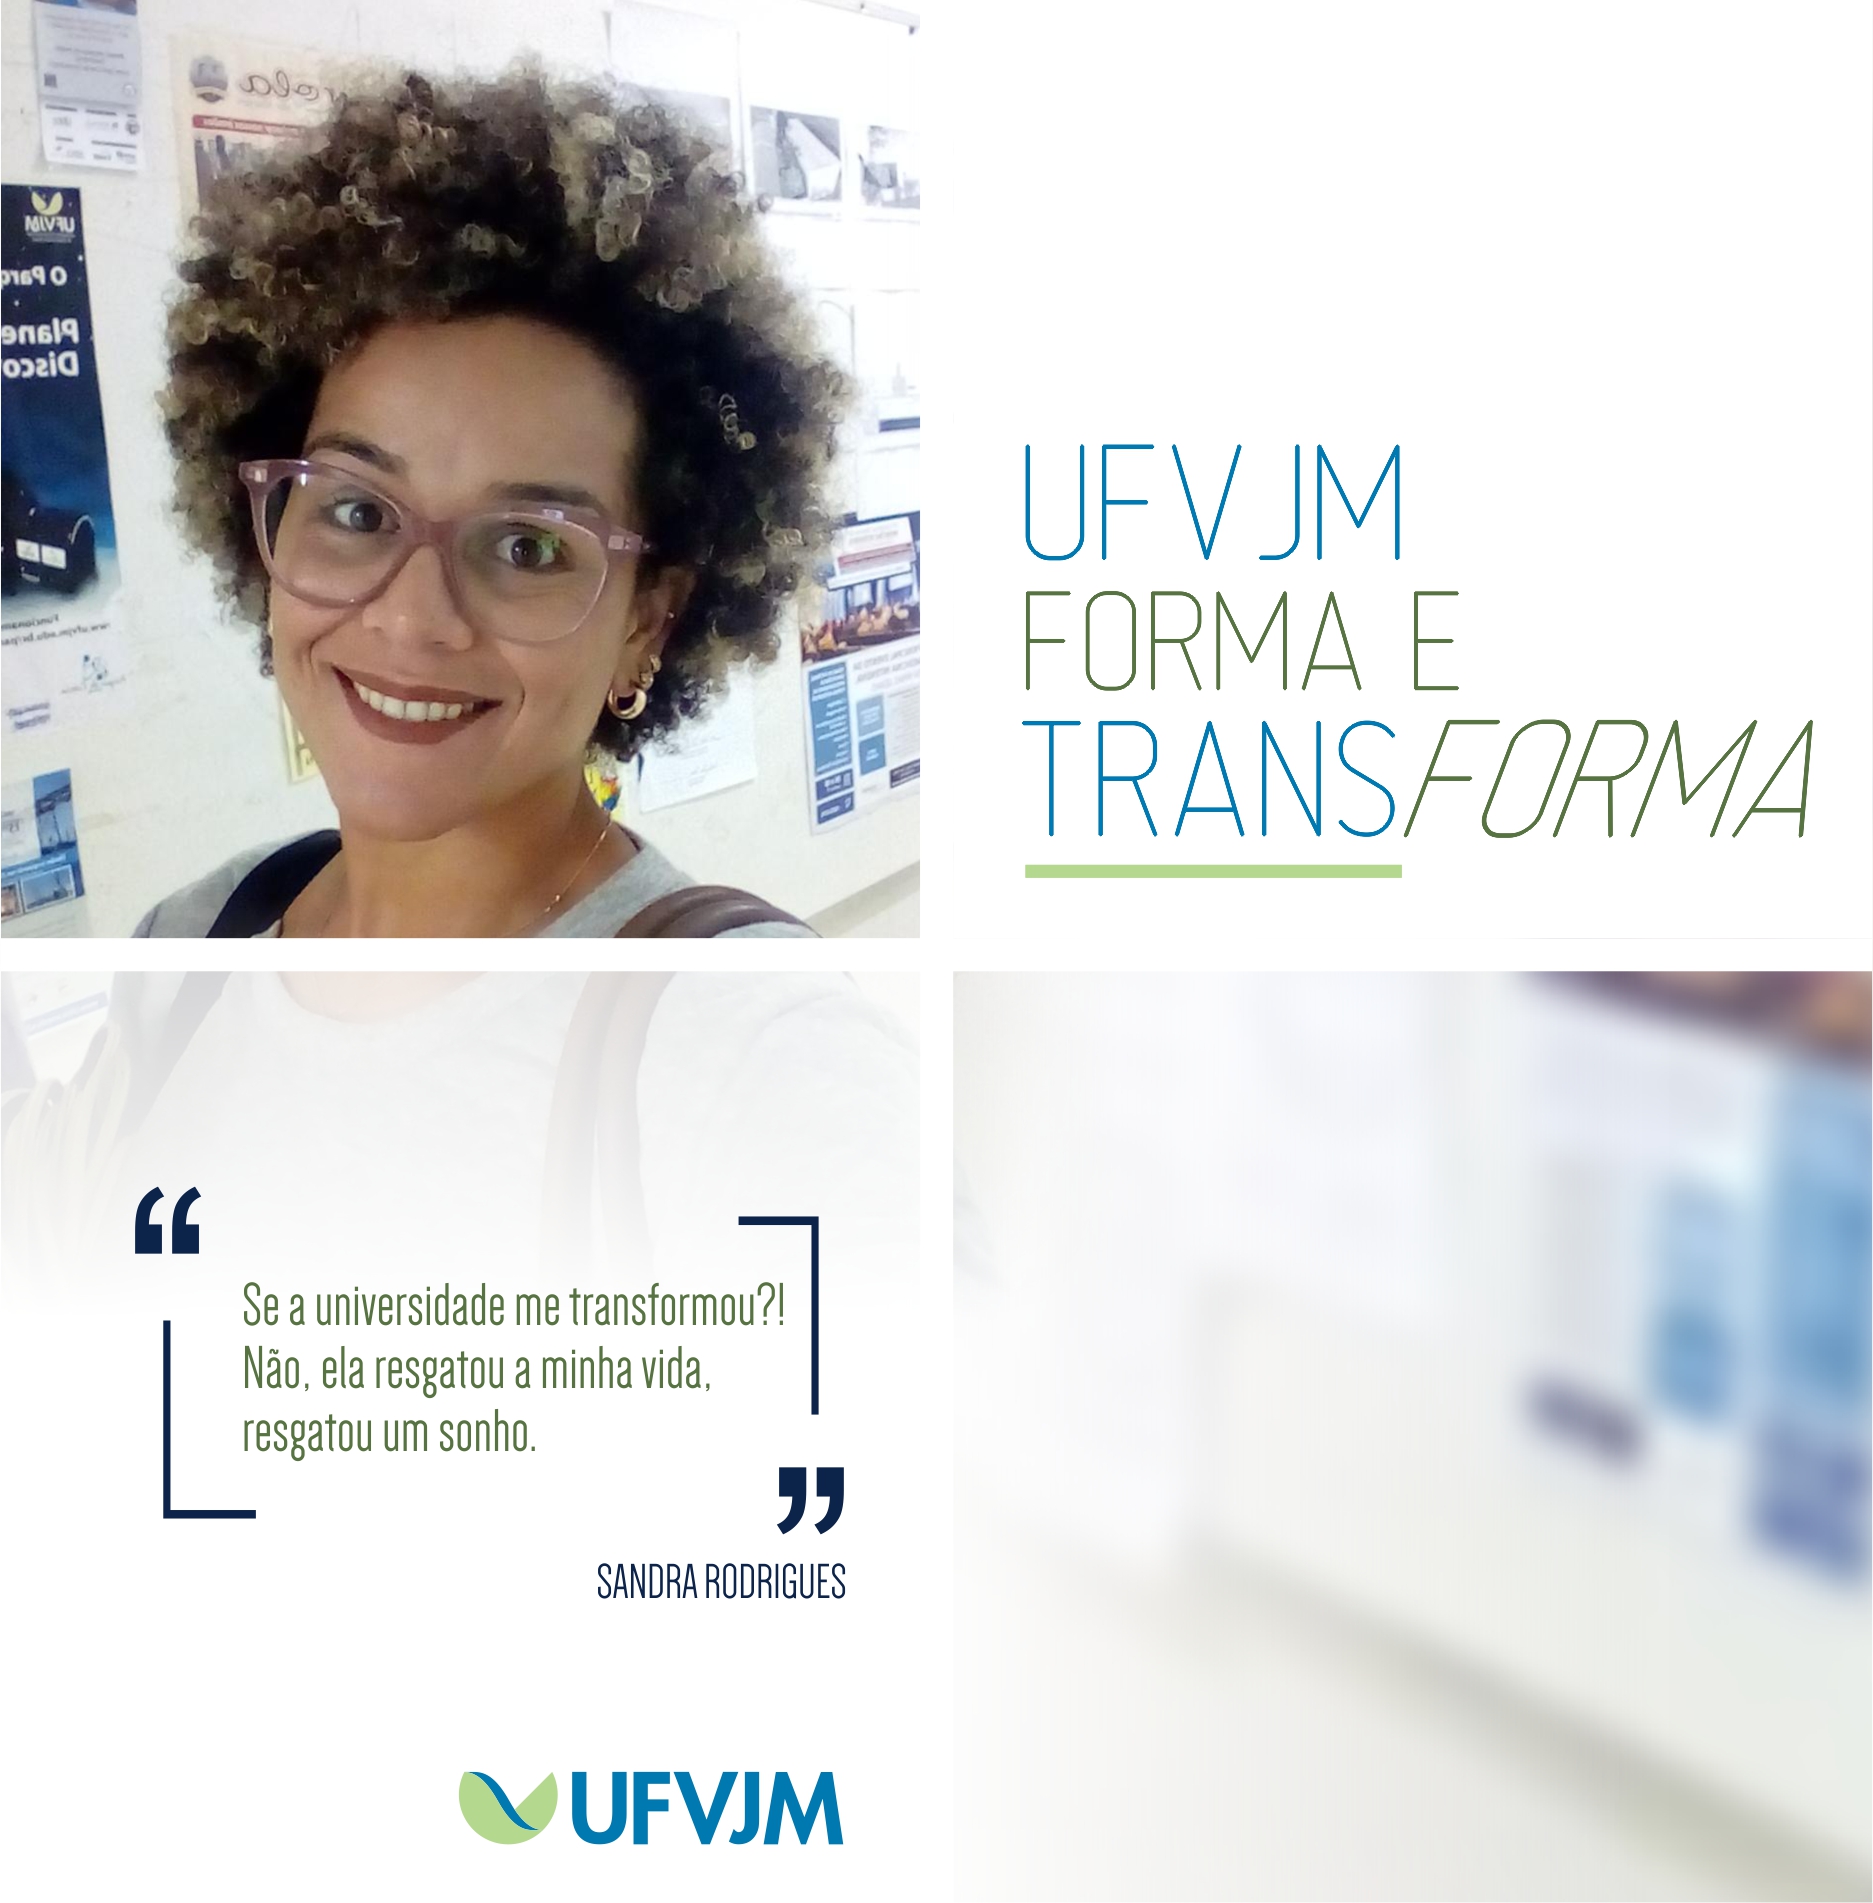 UFVJM Forma e Transforma - Sandra Rodrigues dos Santos